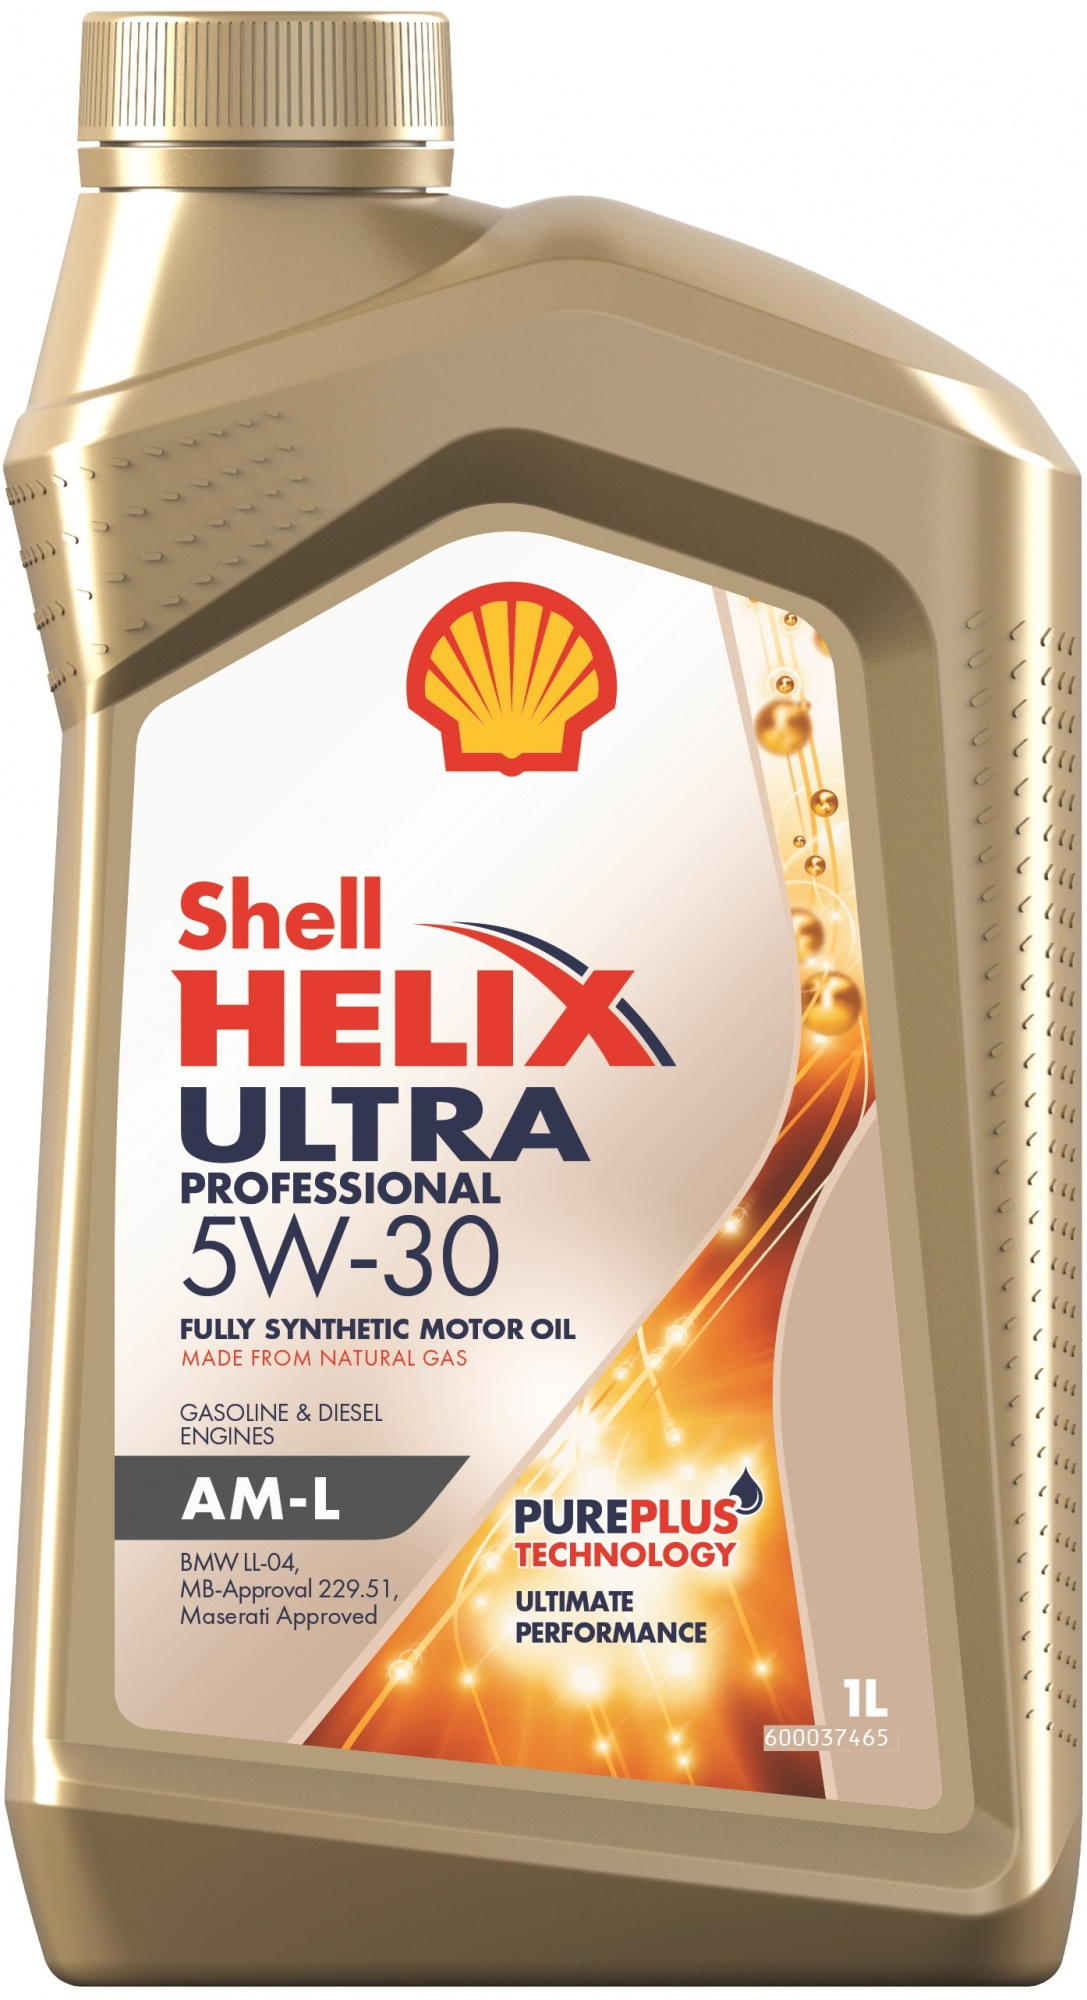 Моторное масло Shell Helix Ultra Professional AM-L 5W-30, 550046352, 1л